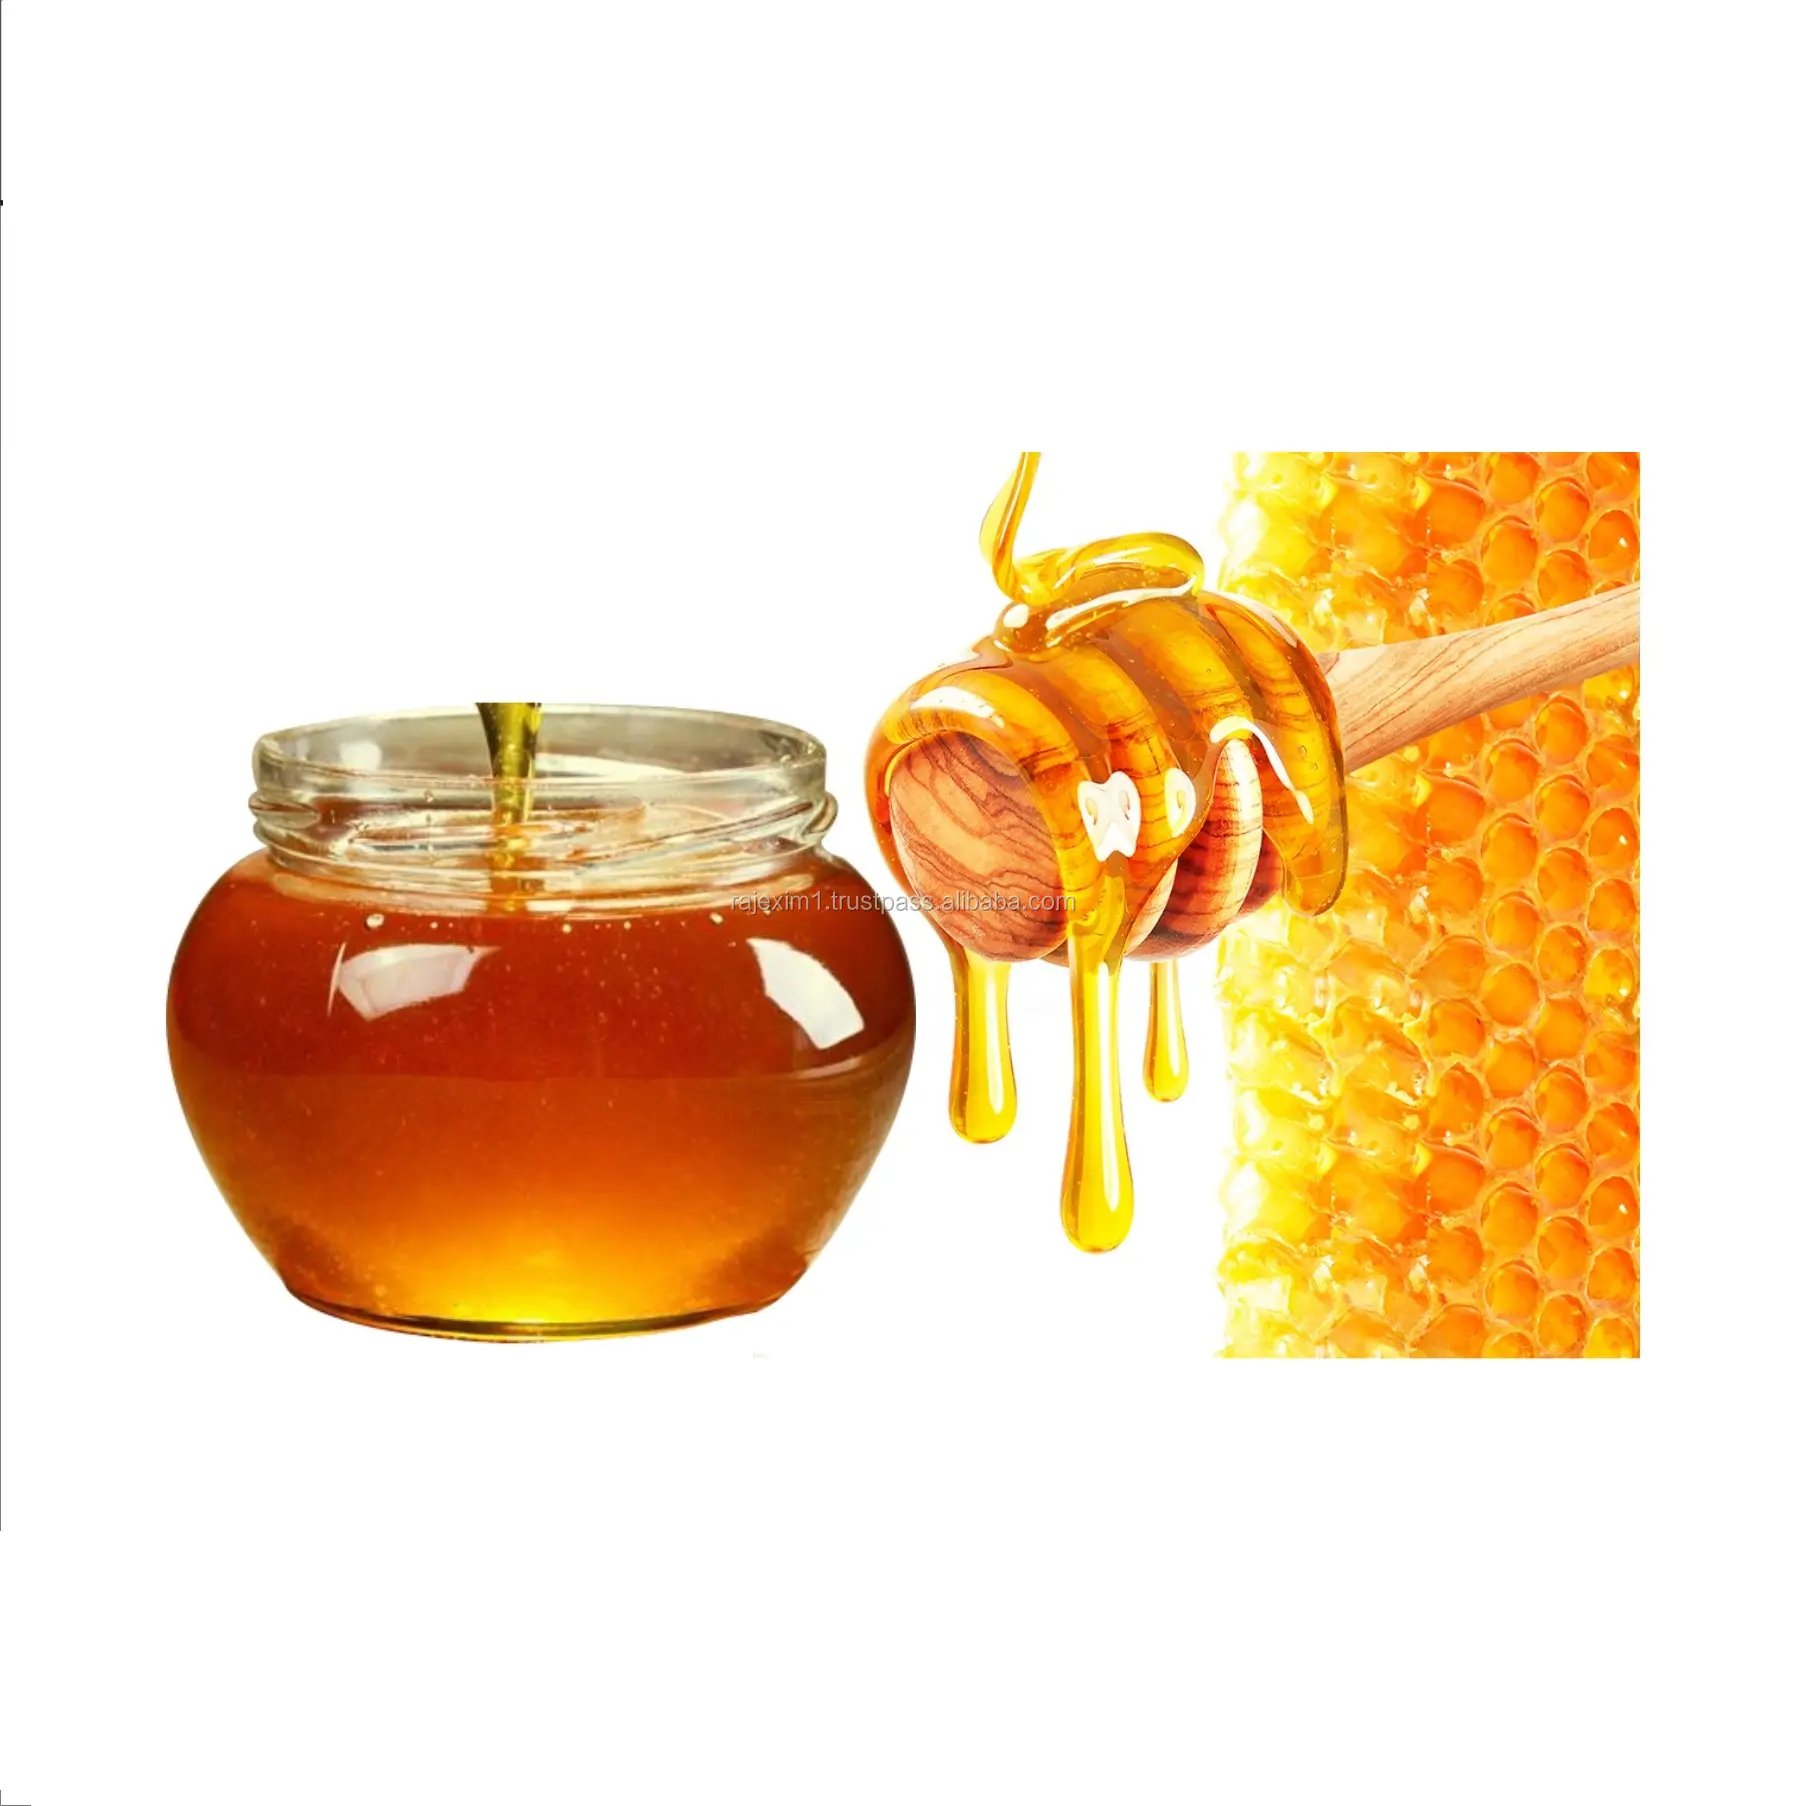 Multi Flora Honey (500g) mit Daunen verpackung aus der indischen Natur hand